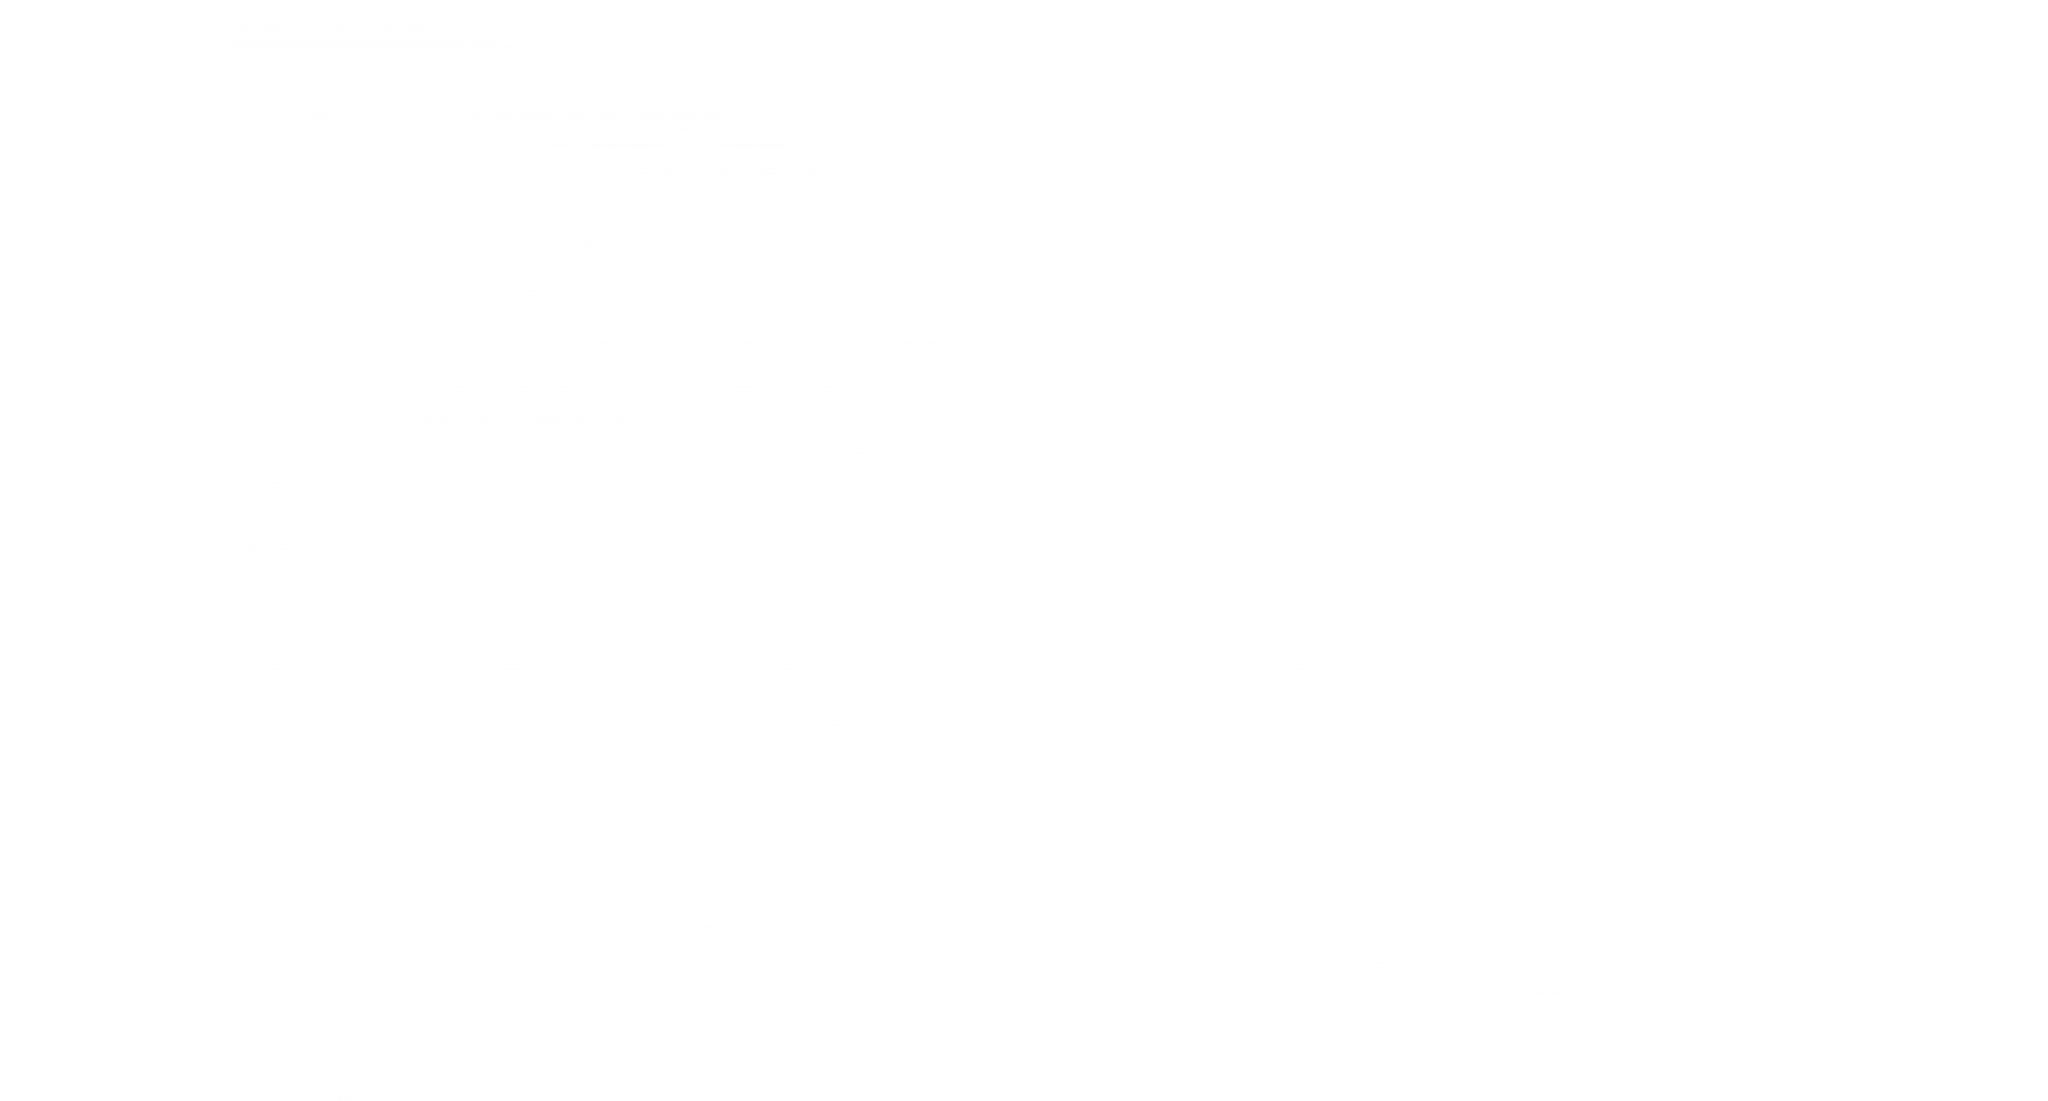 Parkų technika - iMow robotai